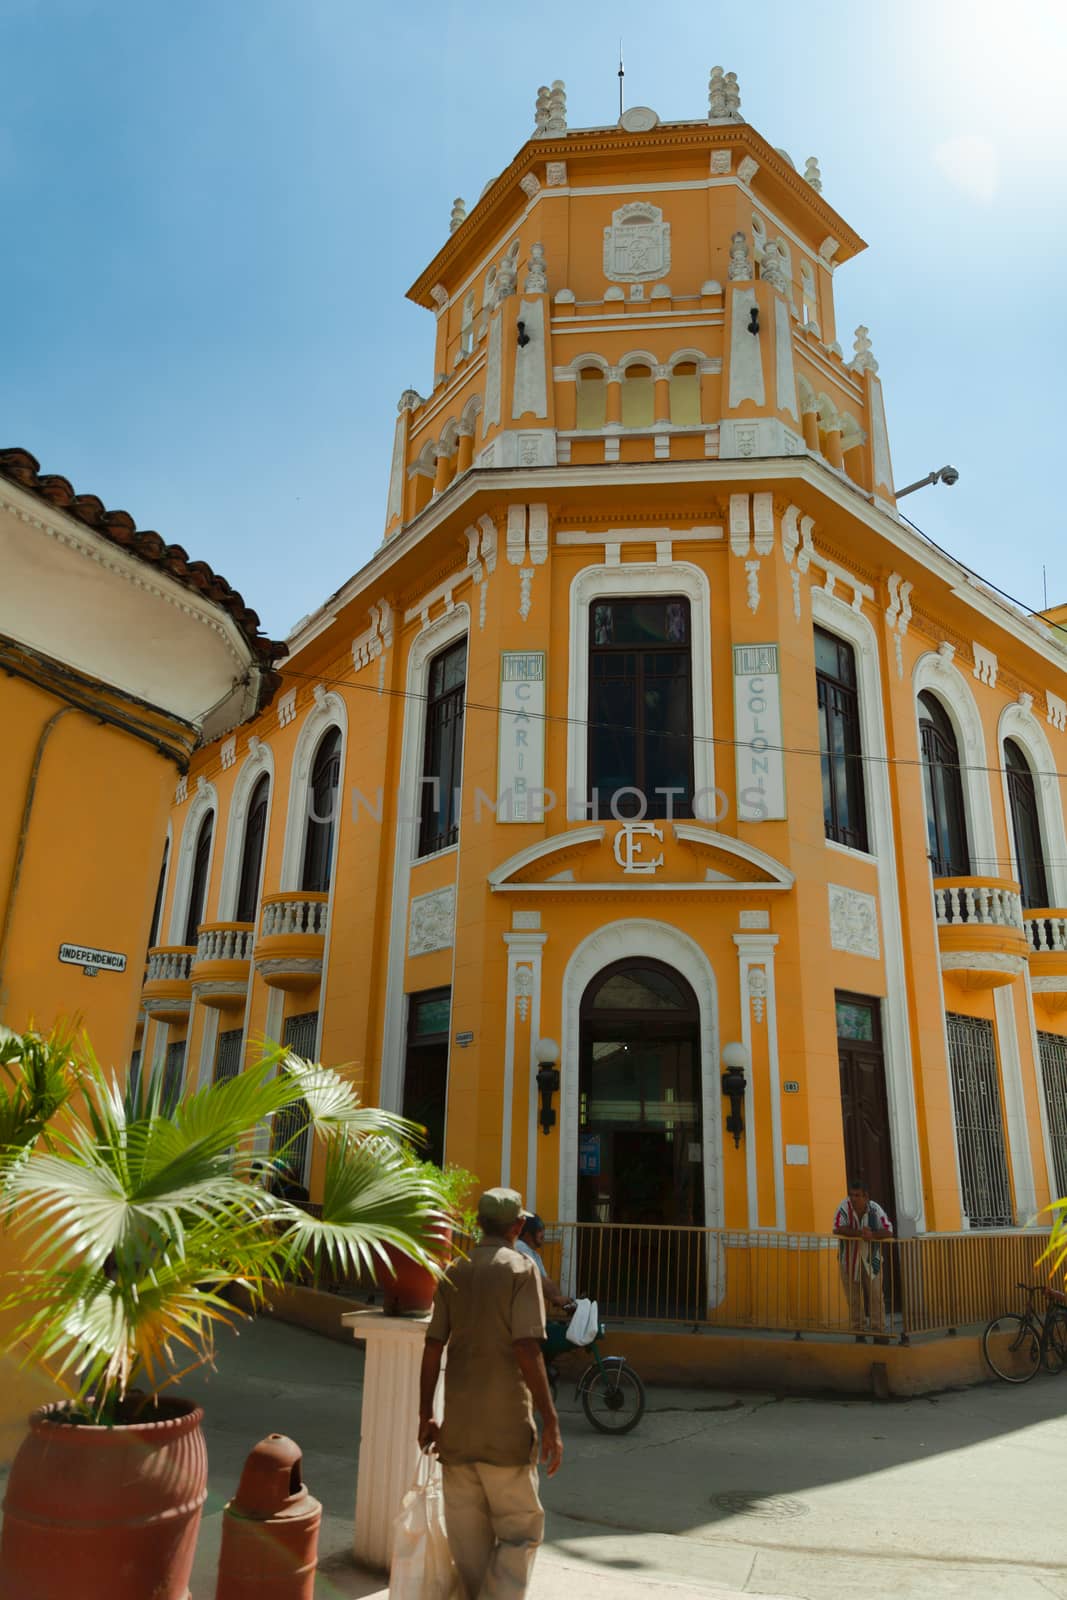 Sancti Spiritus, Cuba - 4 February 2015: La Colonia building